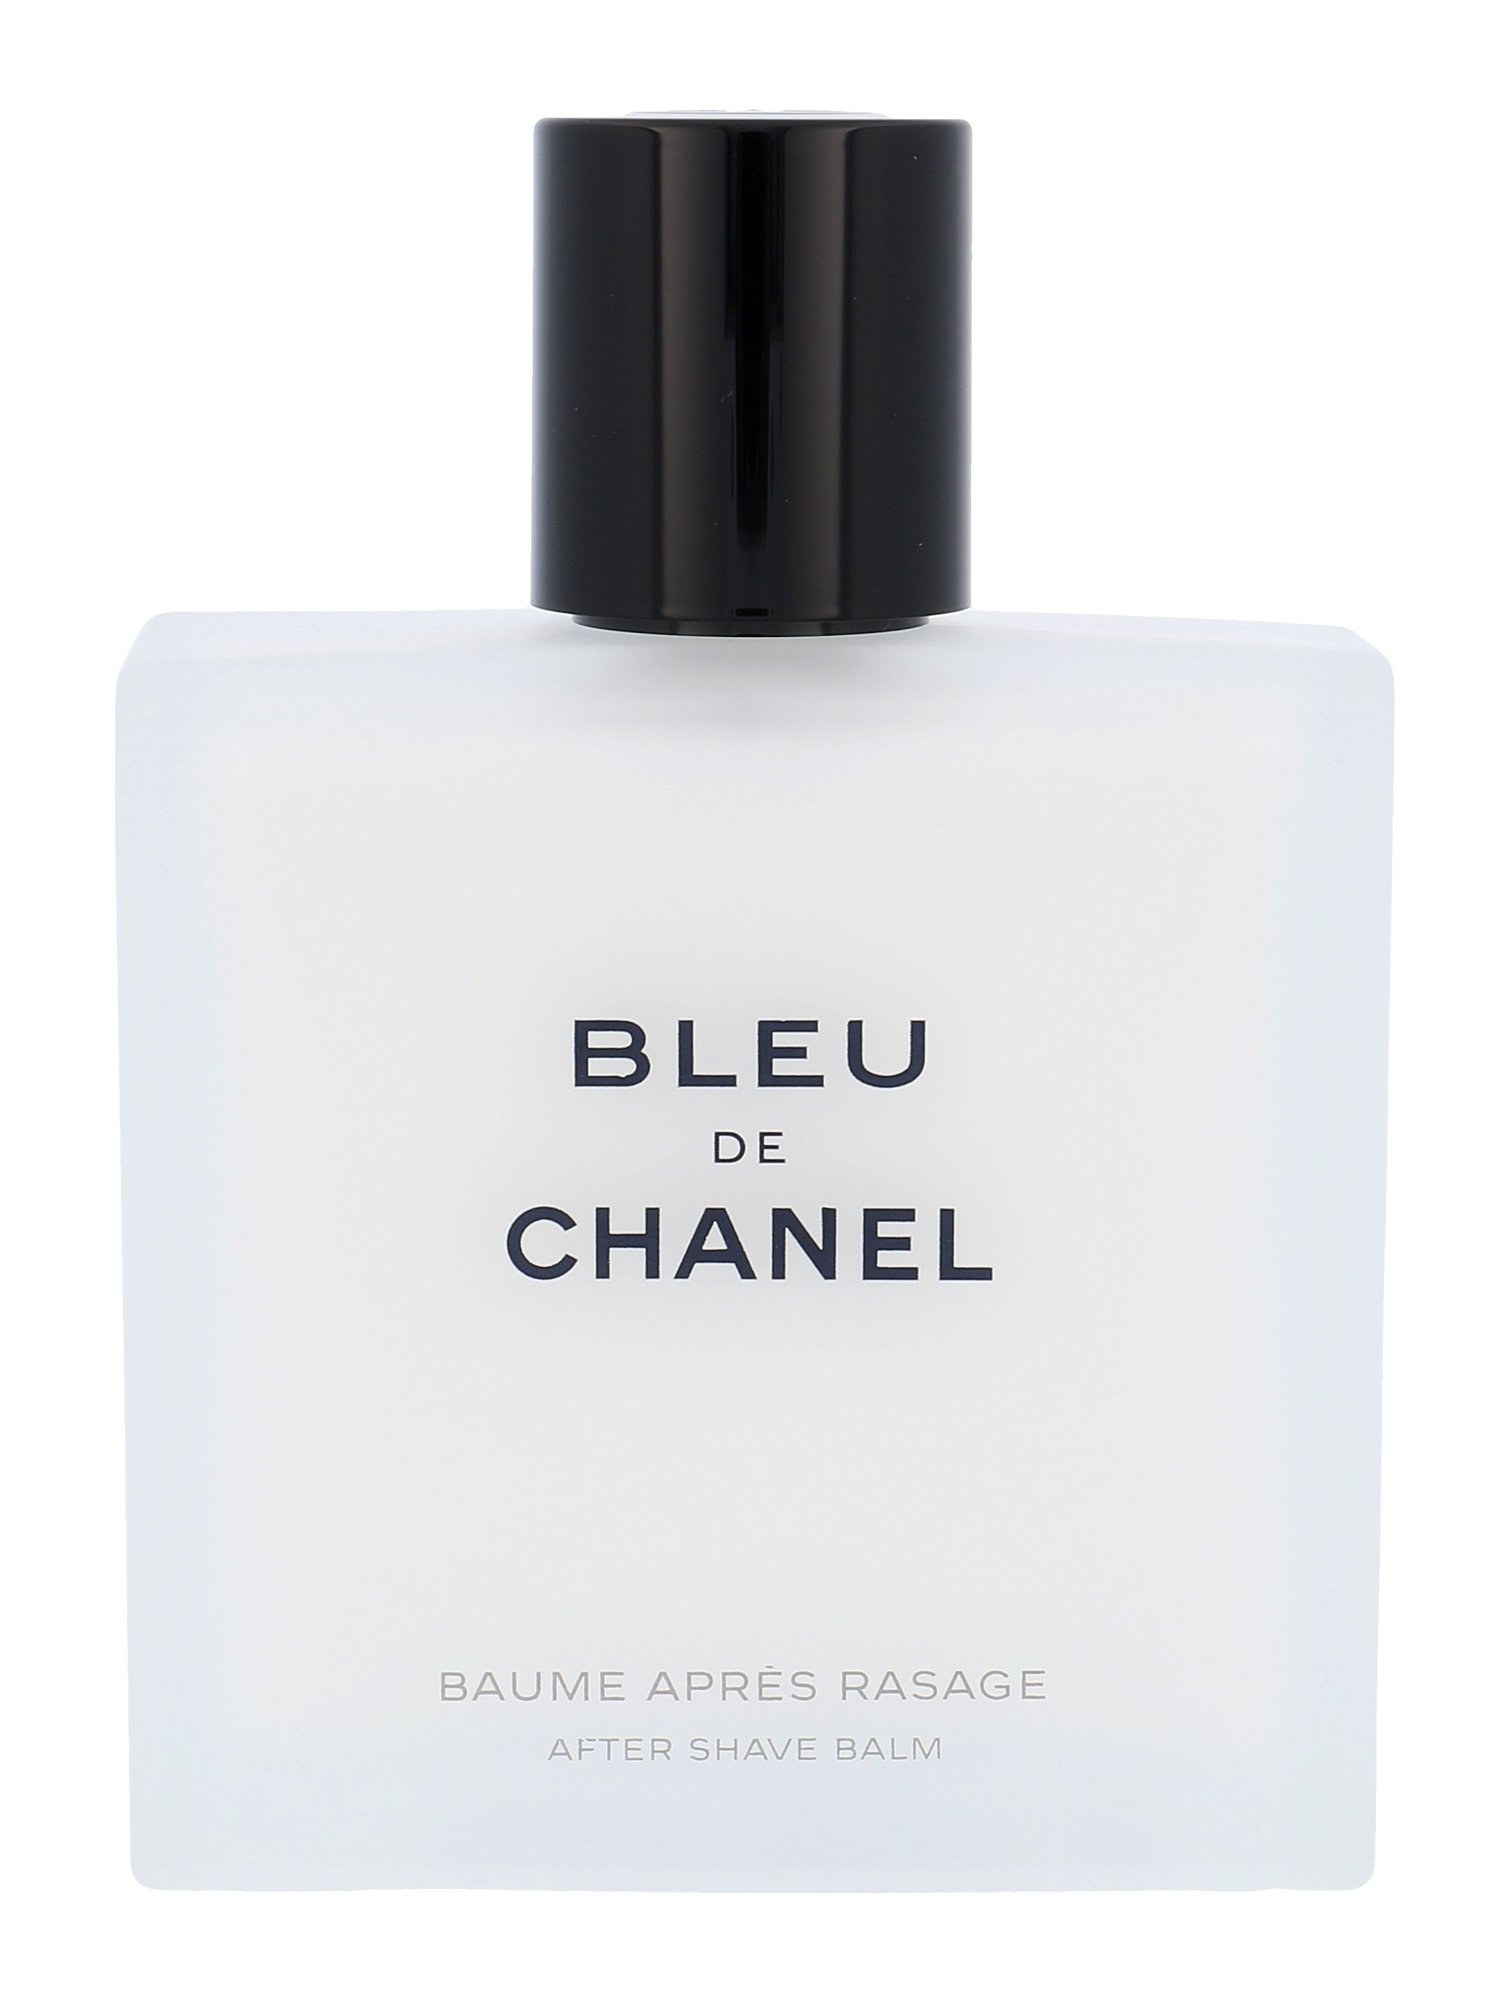 Chanel Bleu de Chanel 90ml balzamas po skutimosi